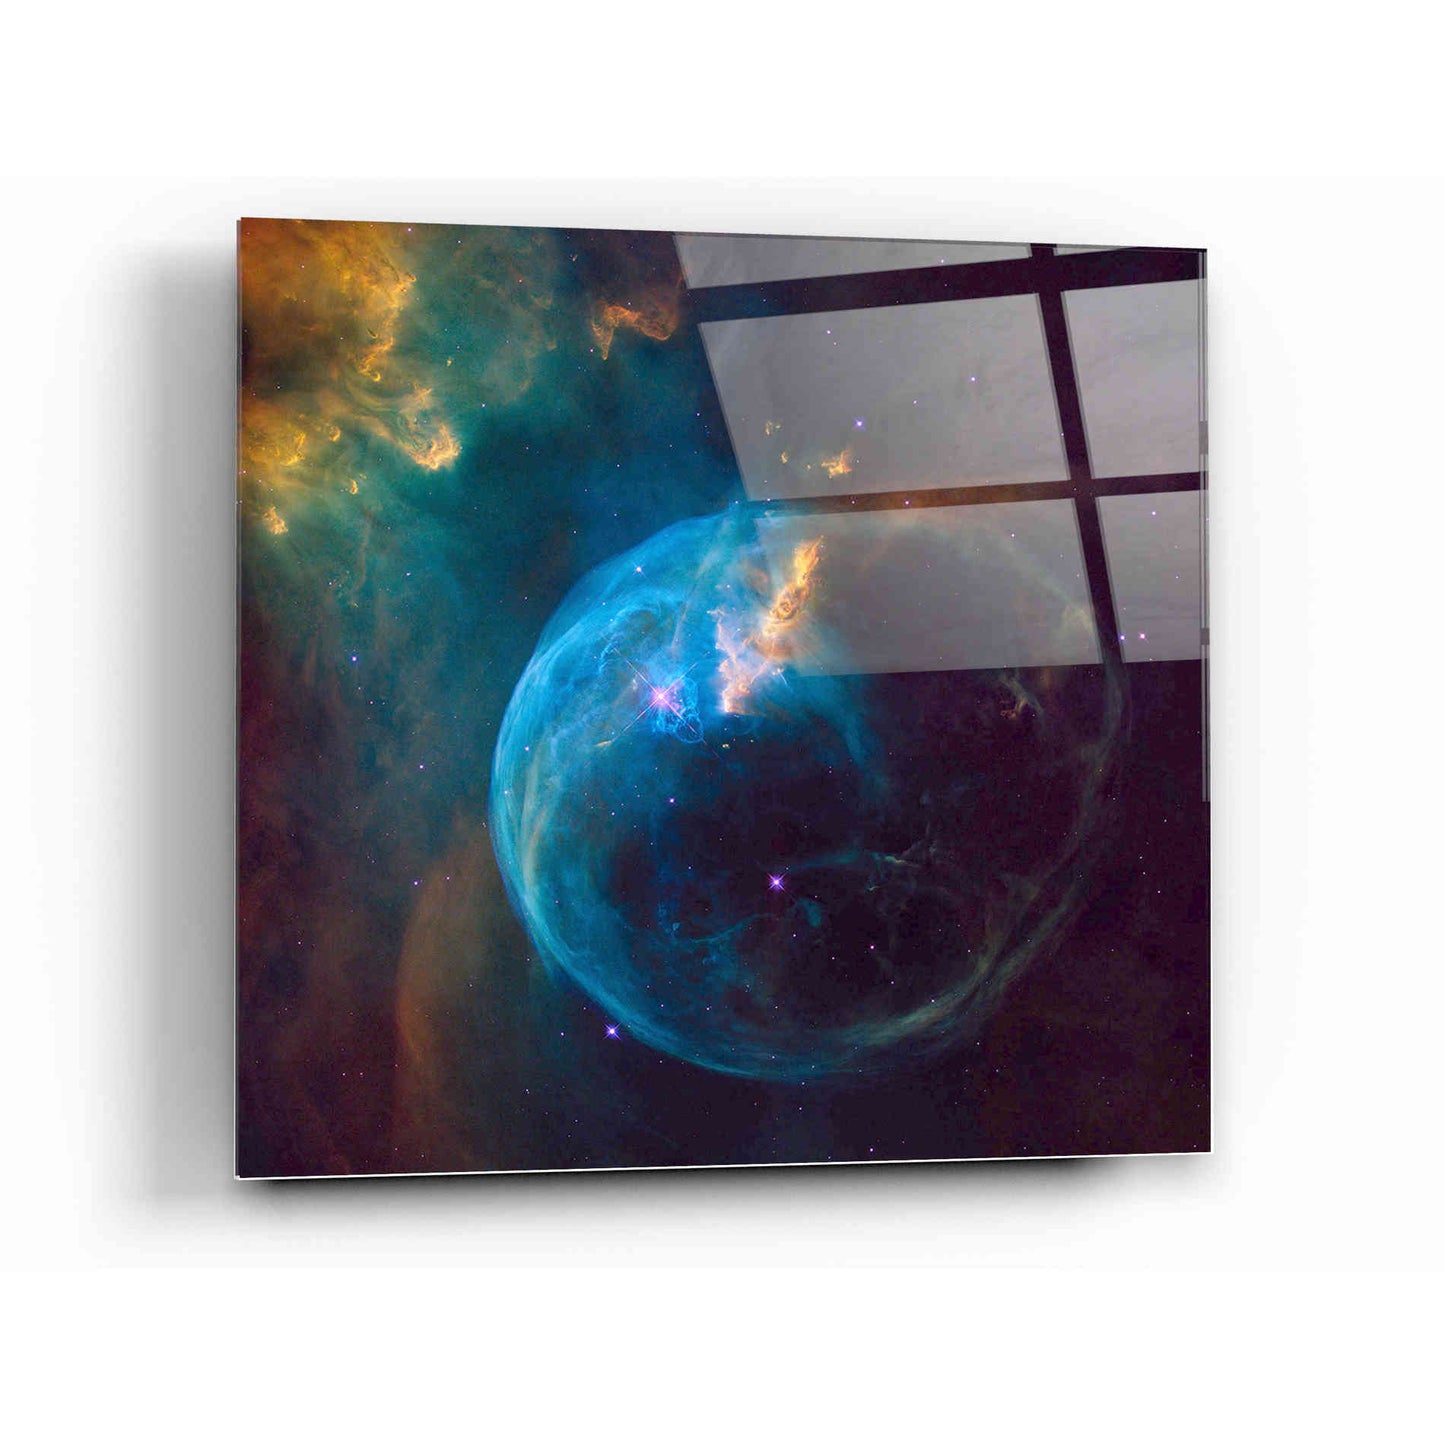 Epic Art "Bubble Nebula" Hubble Space Telescope Acrylic Glass Wall Art,12x12